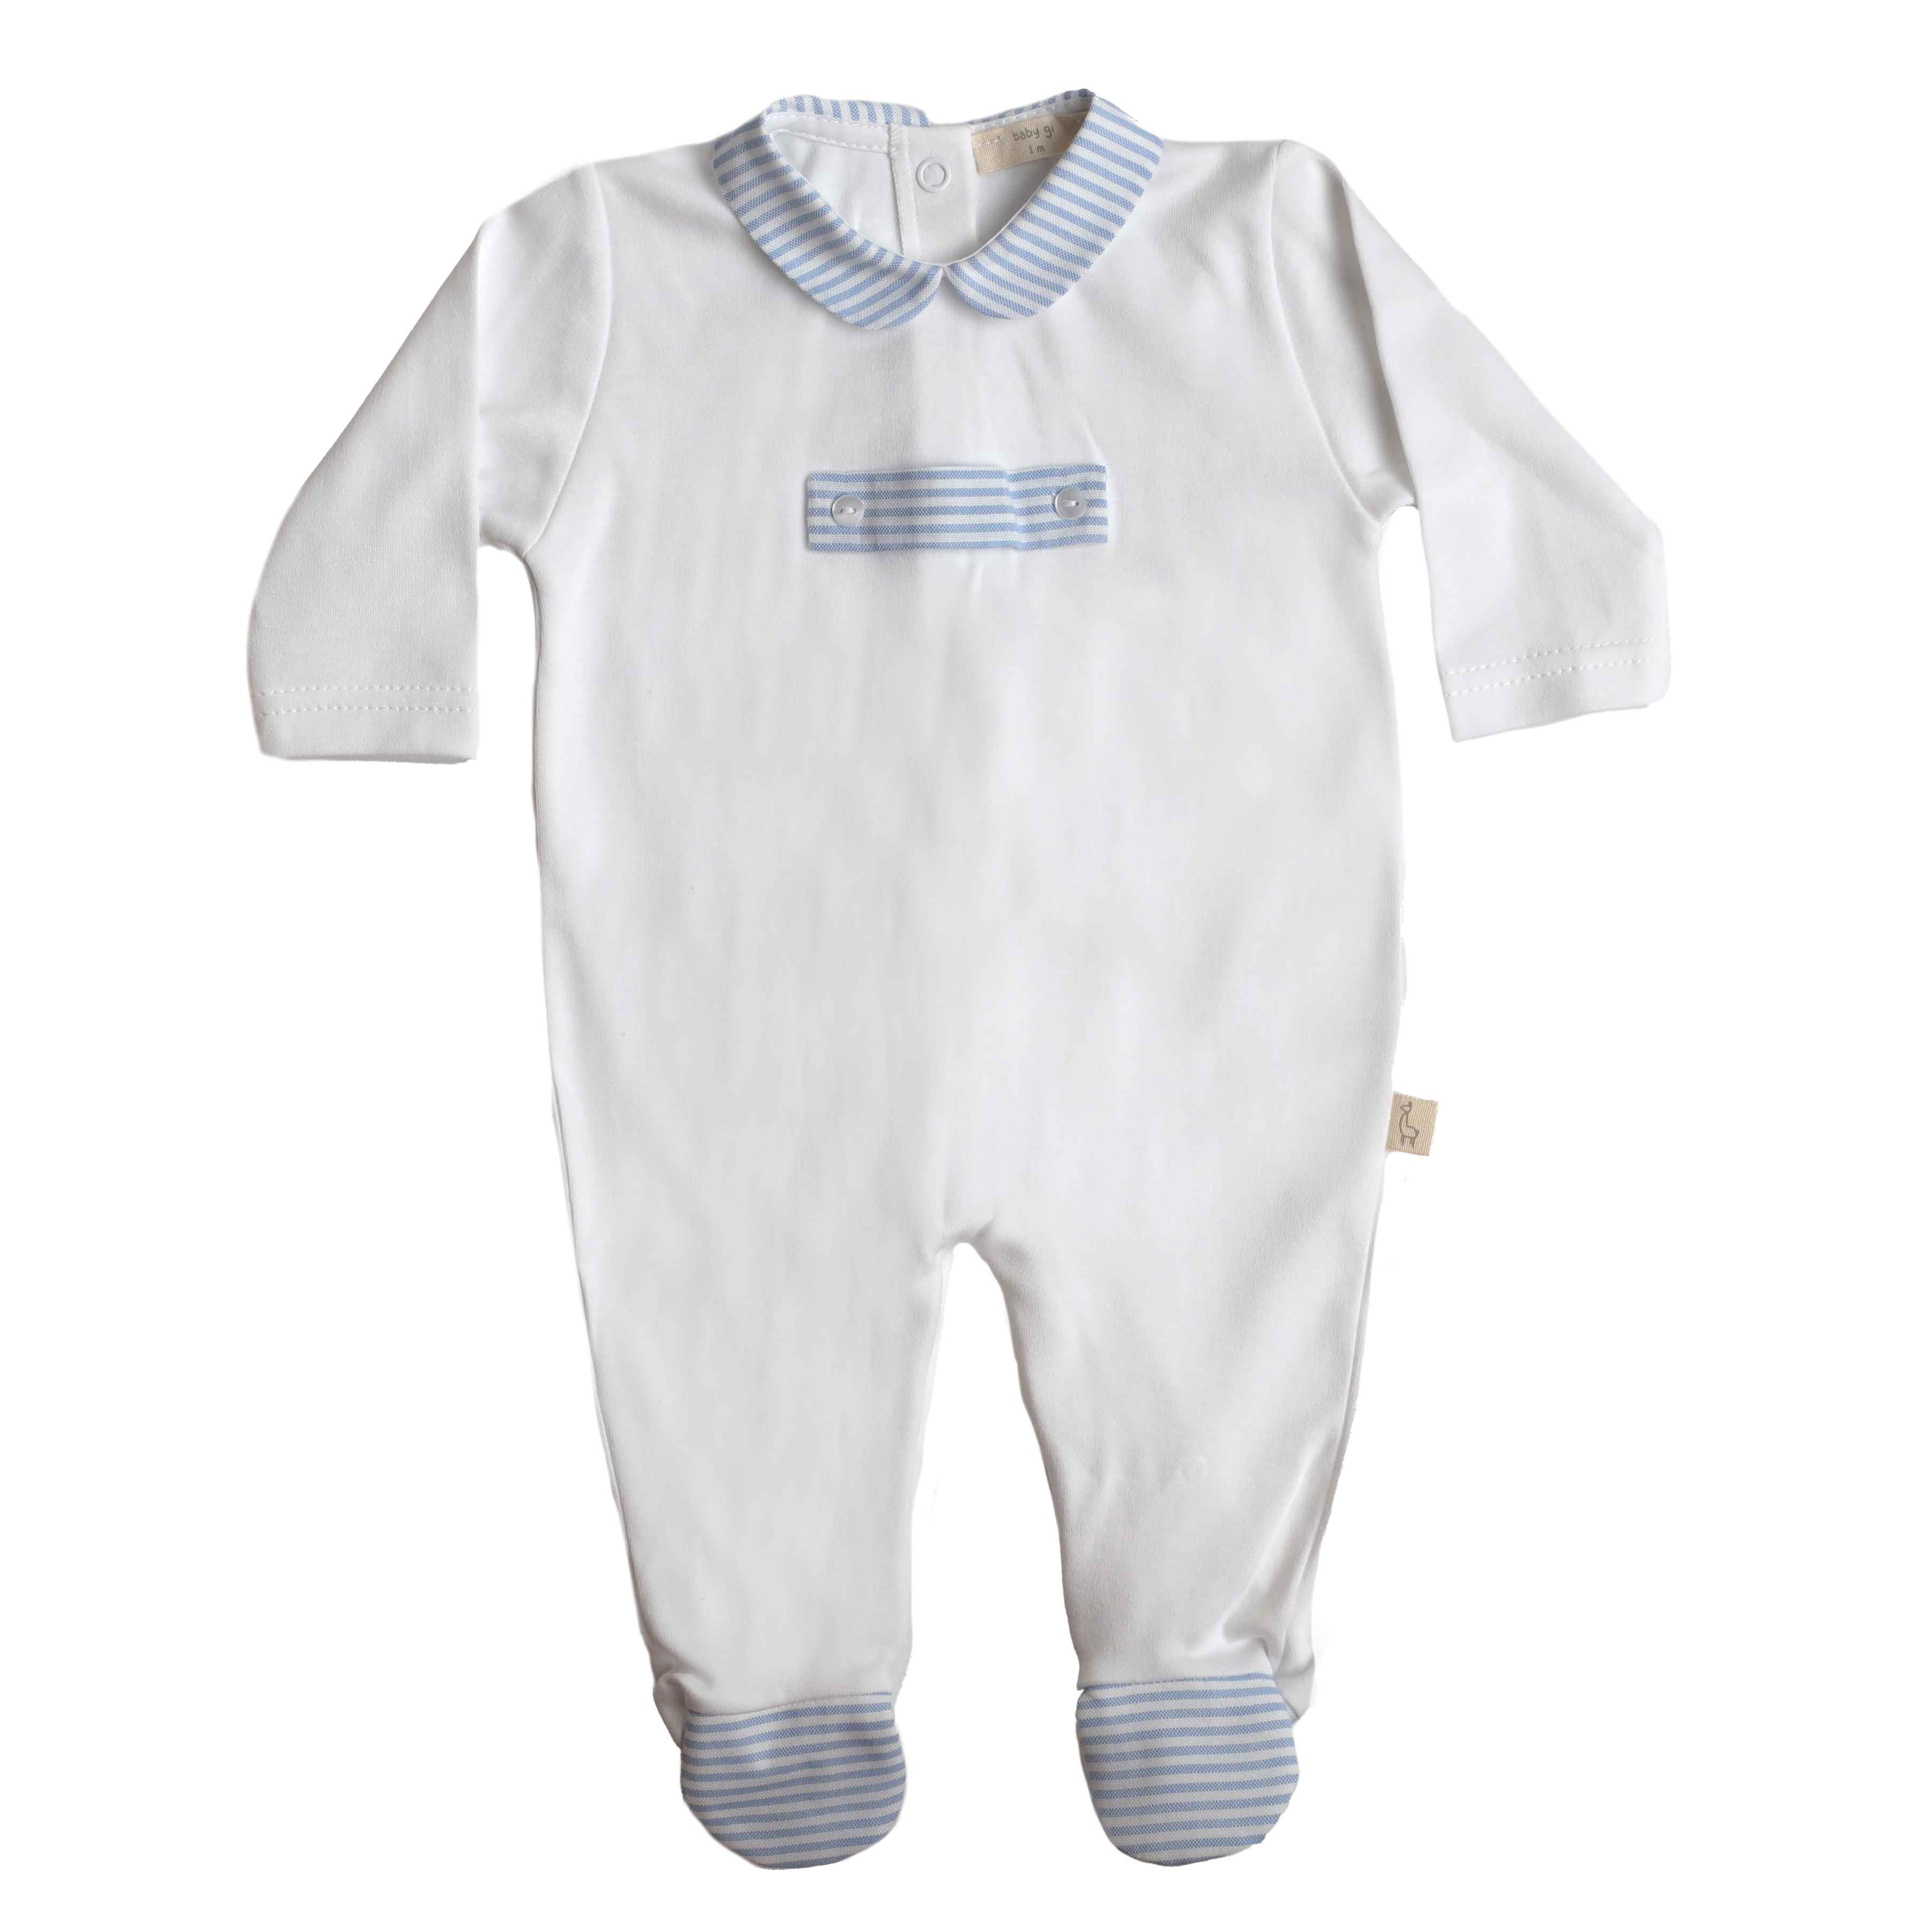 Babygrow - White & Blue Stripes - Baby Gi